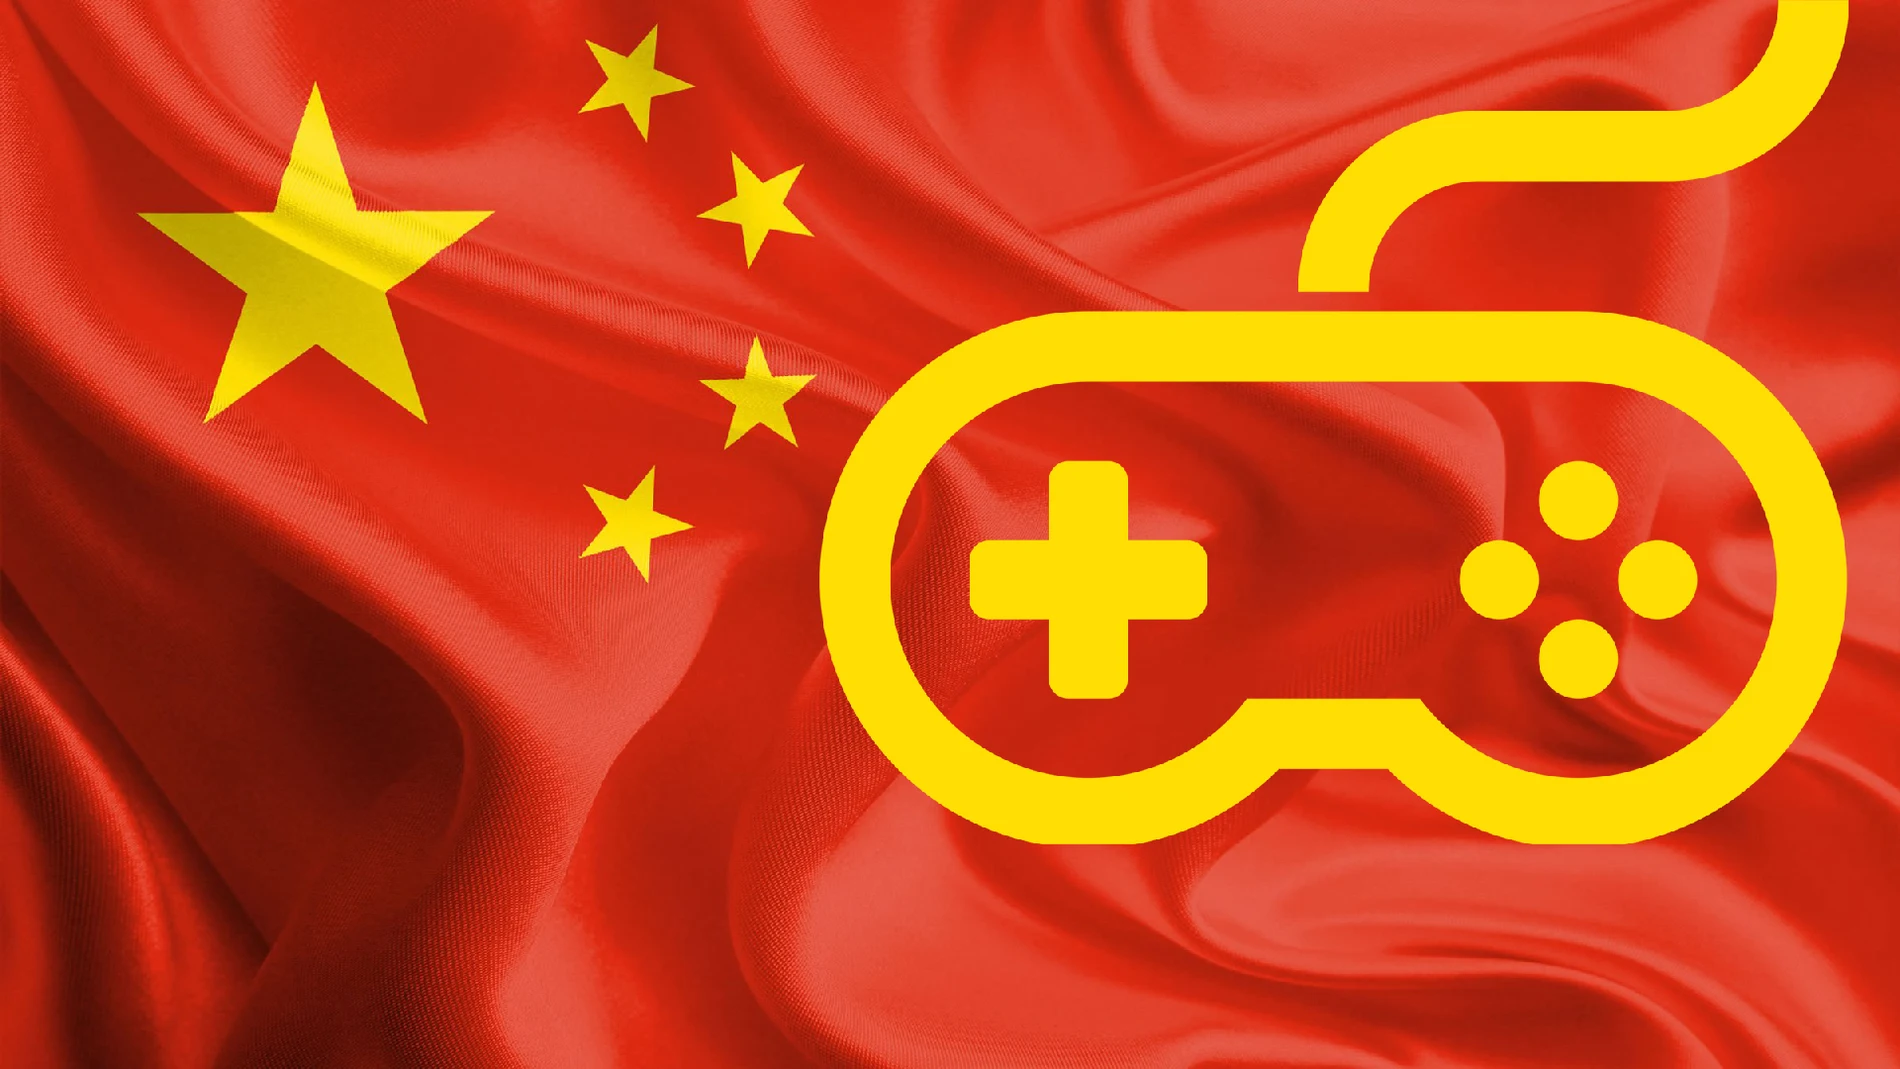 El Partido Comunista de China define la participación prolongada en un videojuego como un equivalente al “opio espiritual”.